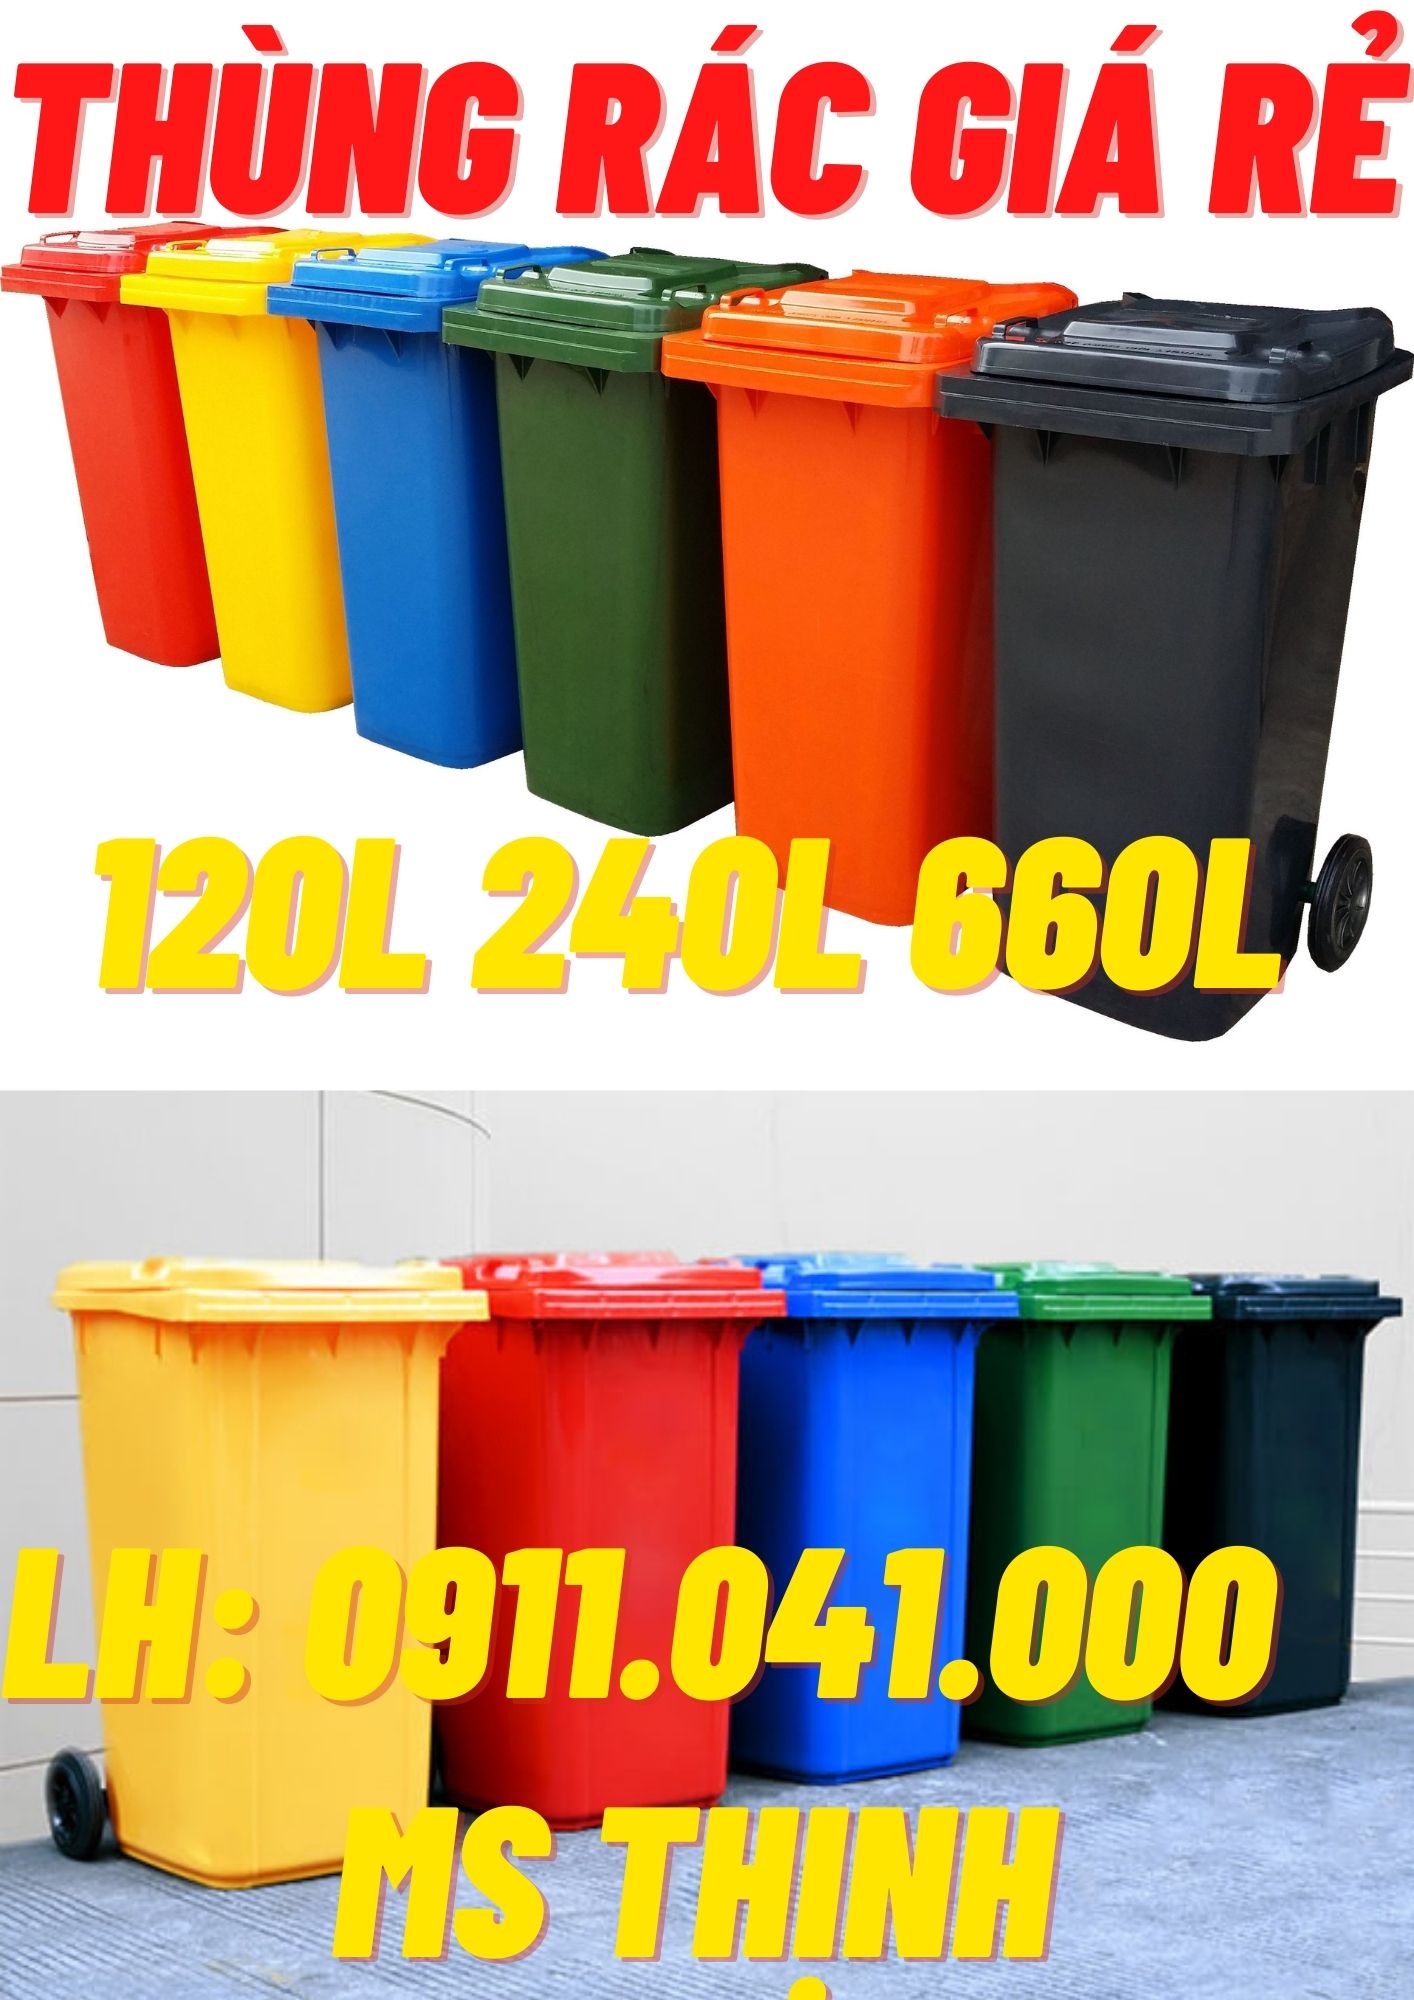 Phân phối thùng rác nhập khẩu 240 lít 0911.041.000 Ms Thịnh